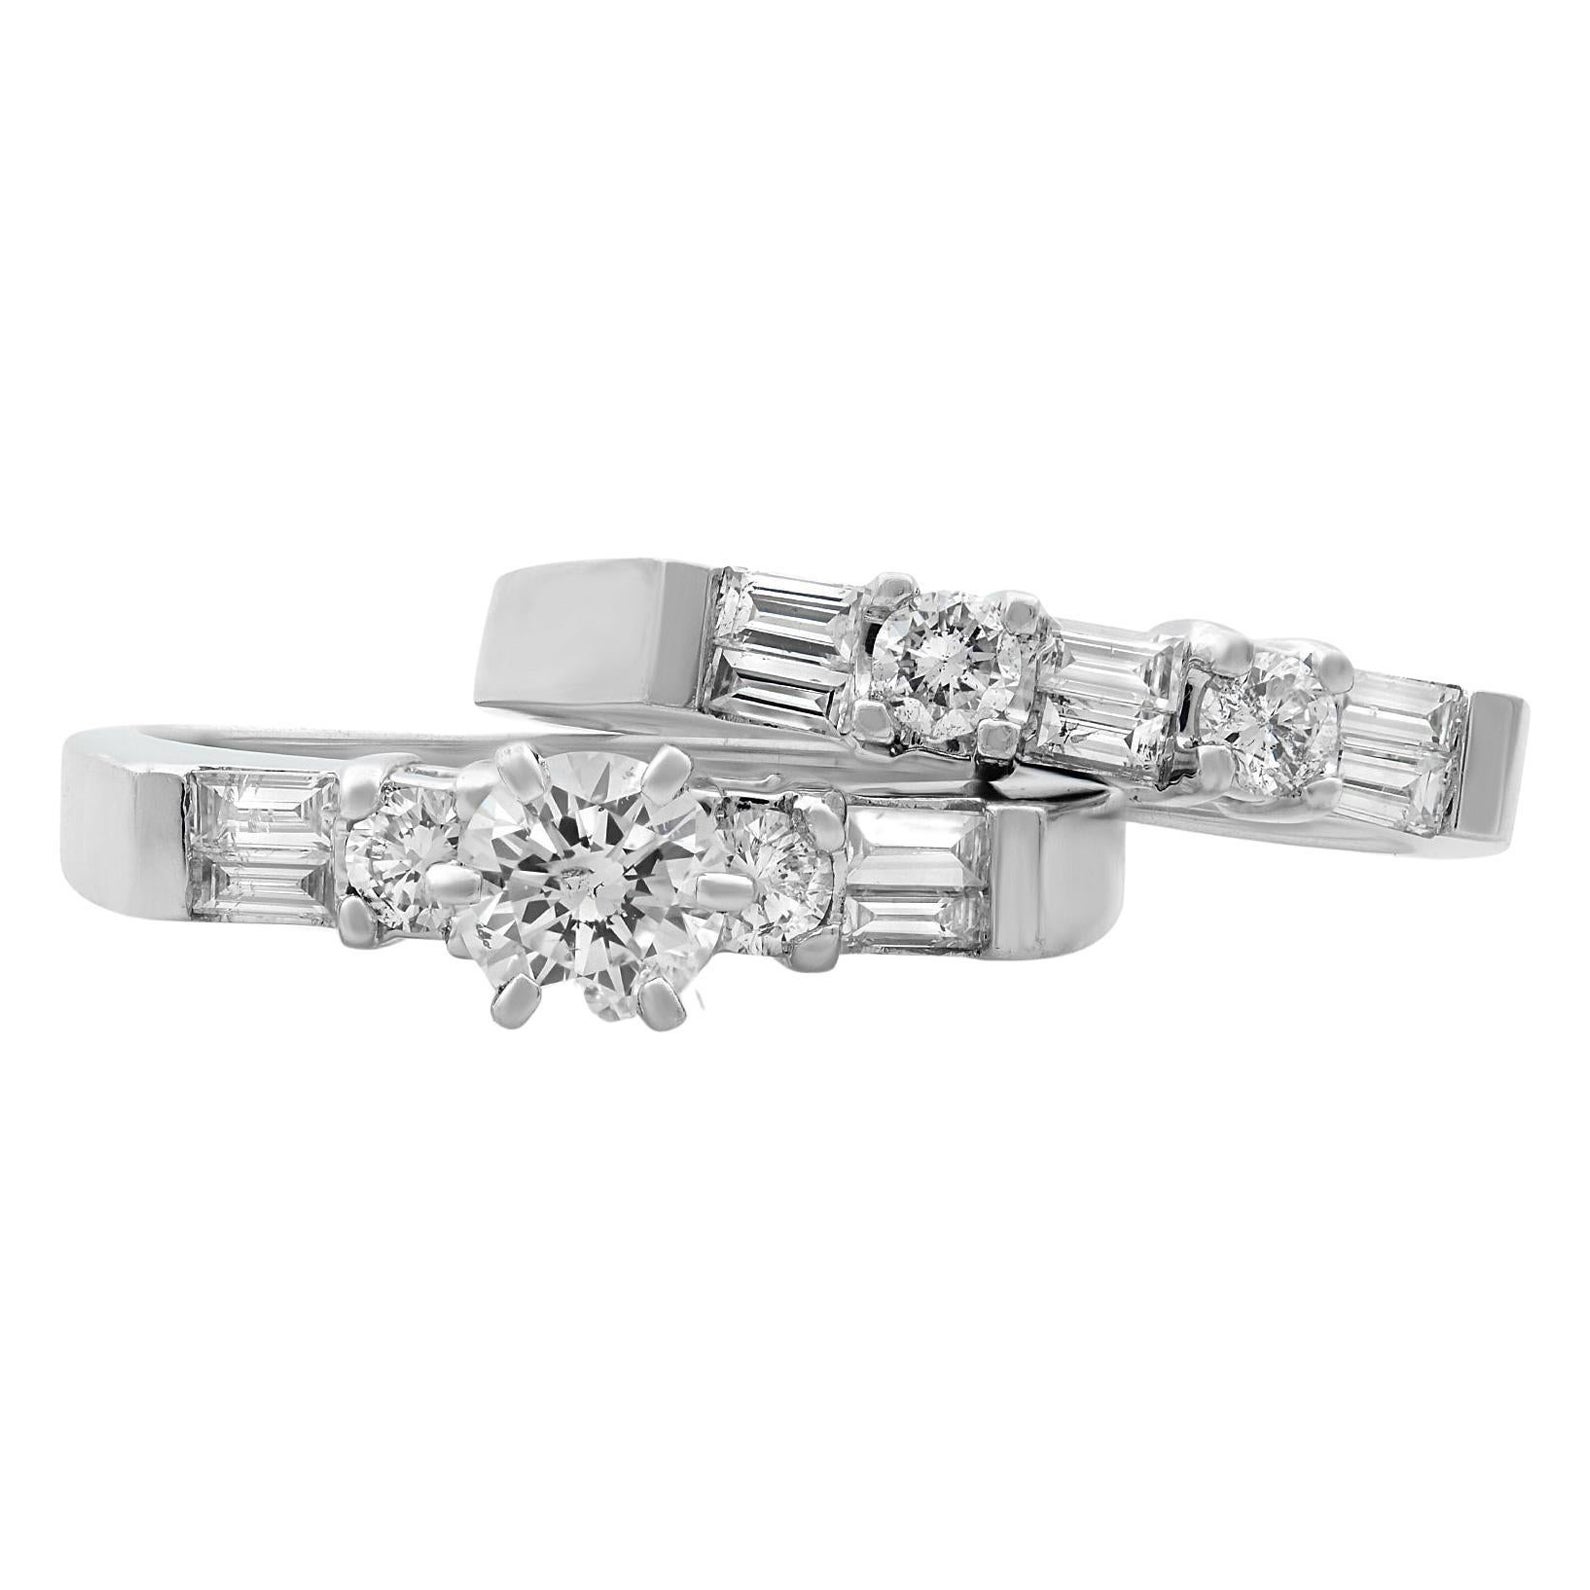 Rachel Koen Diamond Engagement Set of Rings 14K White Gold 1.0cttw For Sale